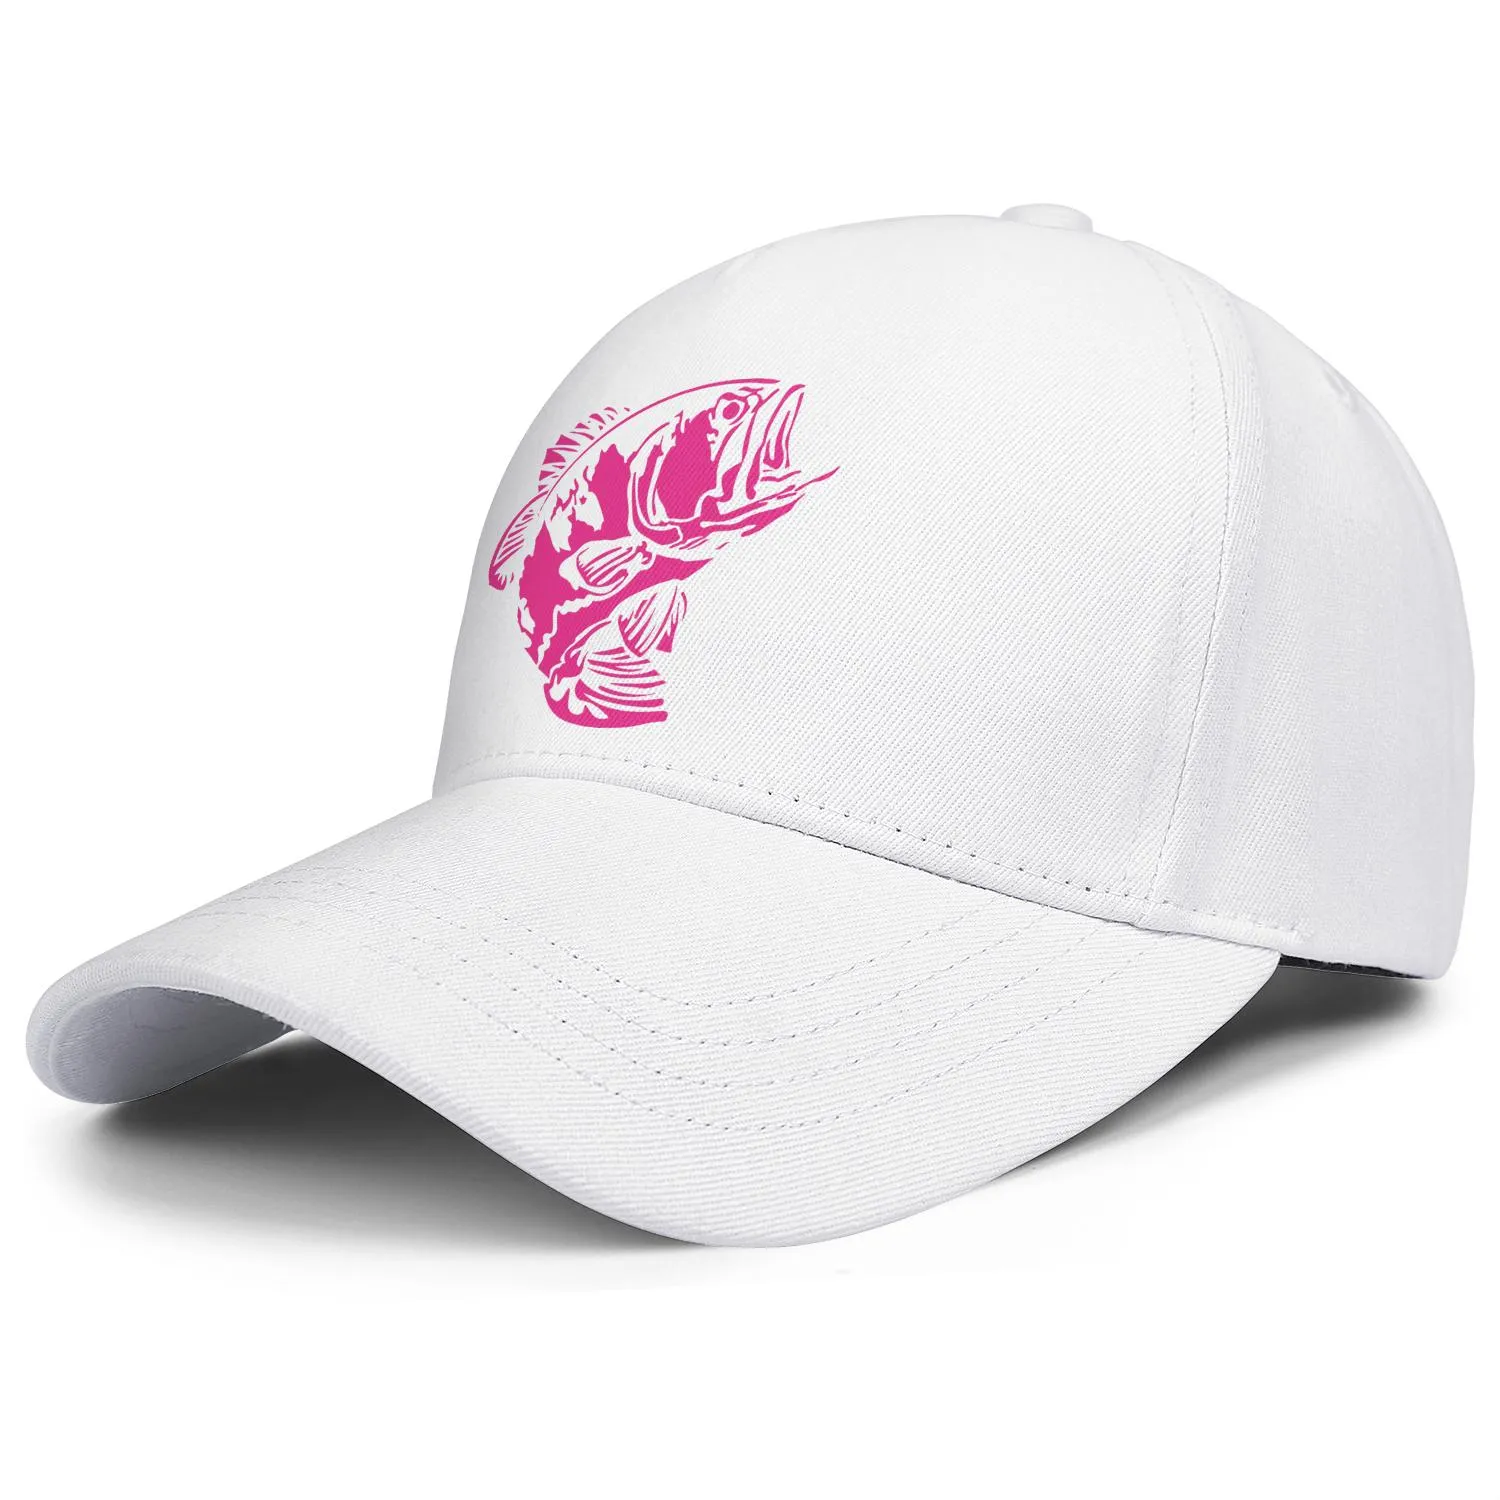 Mody bass pro shop rybołówstwo oryginalne logo unisex baseball czapka golfowa unikalne czapki trucke kamuflaż szary 3d USA flaga różowa piersi ca3236